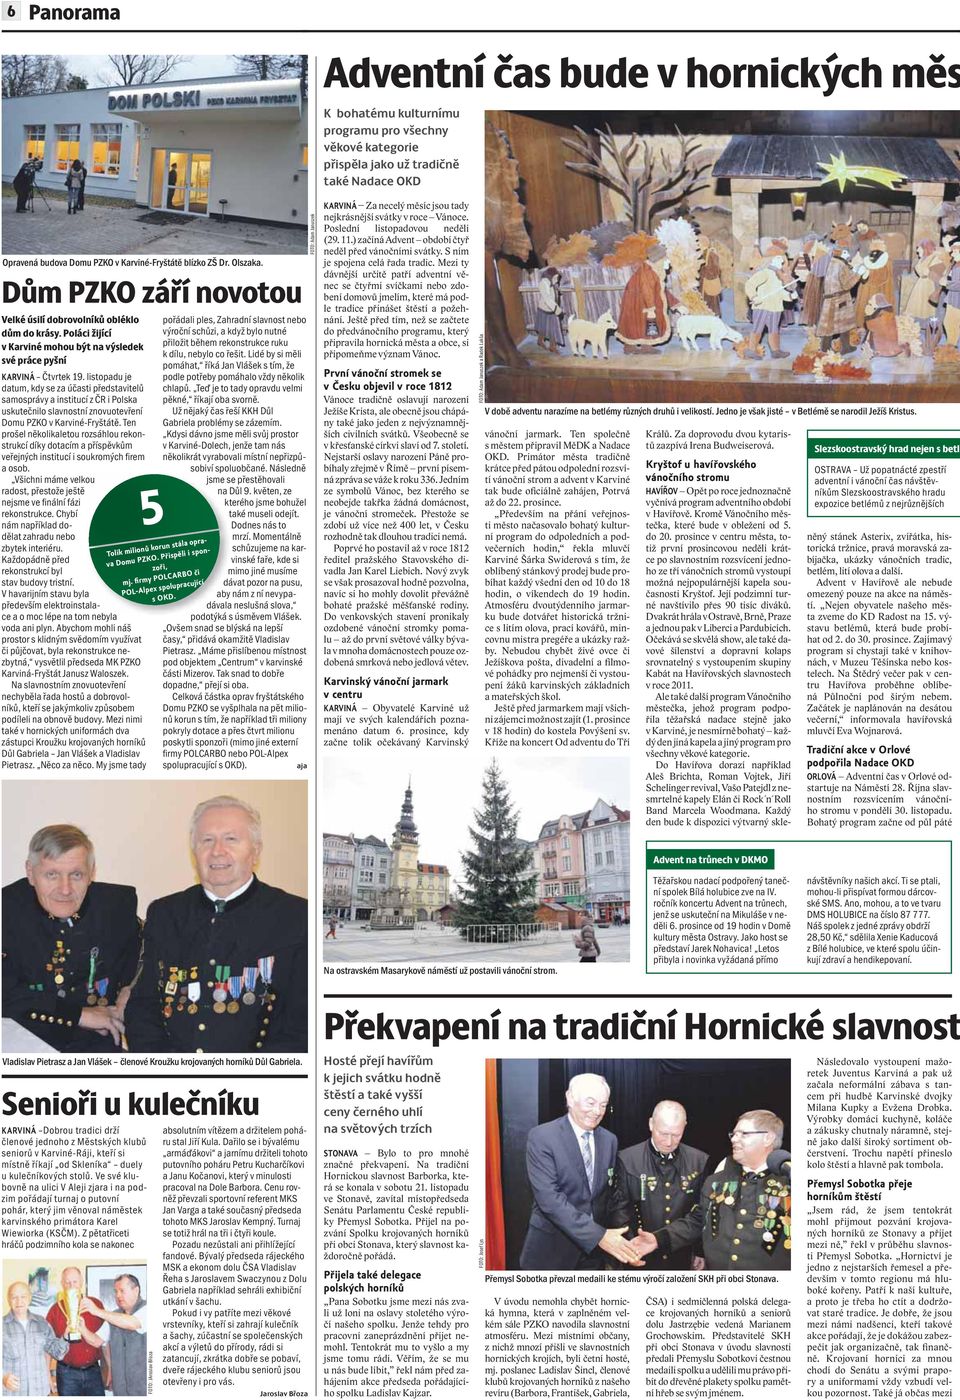 listopadu je datum, kdy se za účasti představitelů samosprávy a institucí z ČR i Polska uskutečnilo slavnostní znovuotevření Domu PZKO v Karviné-Fryštátě.